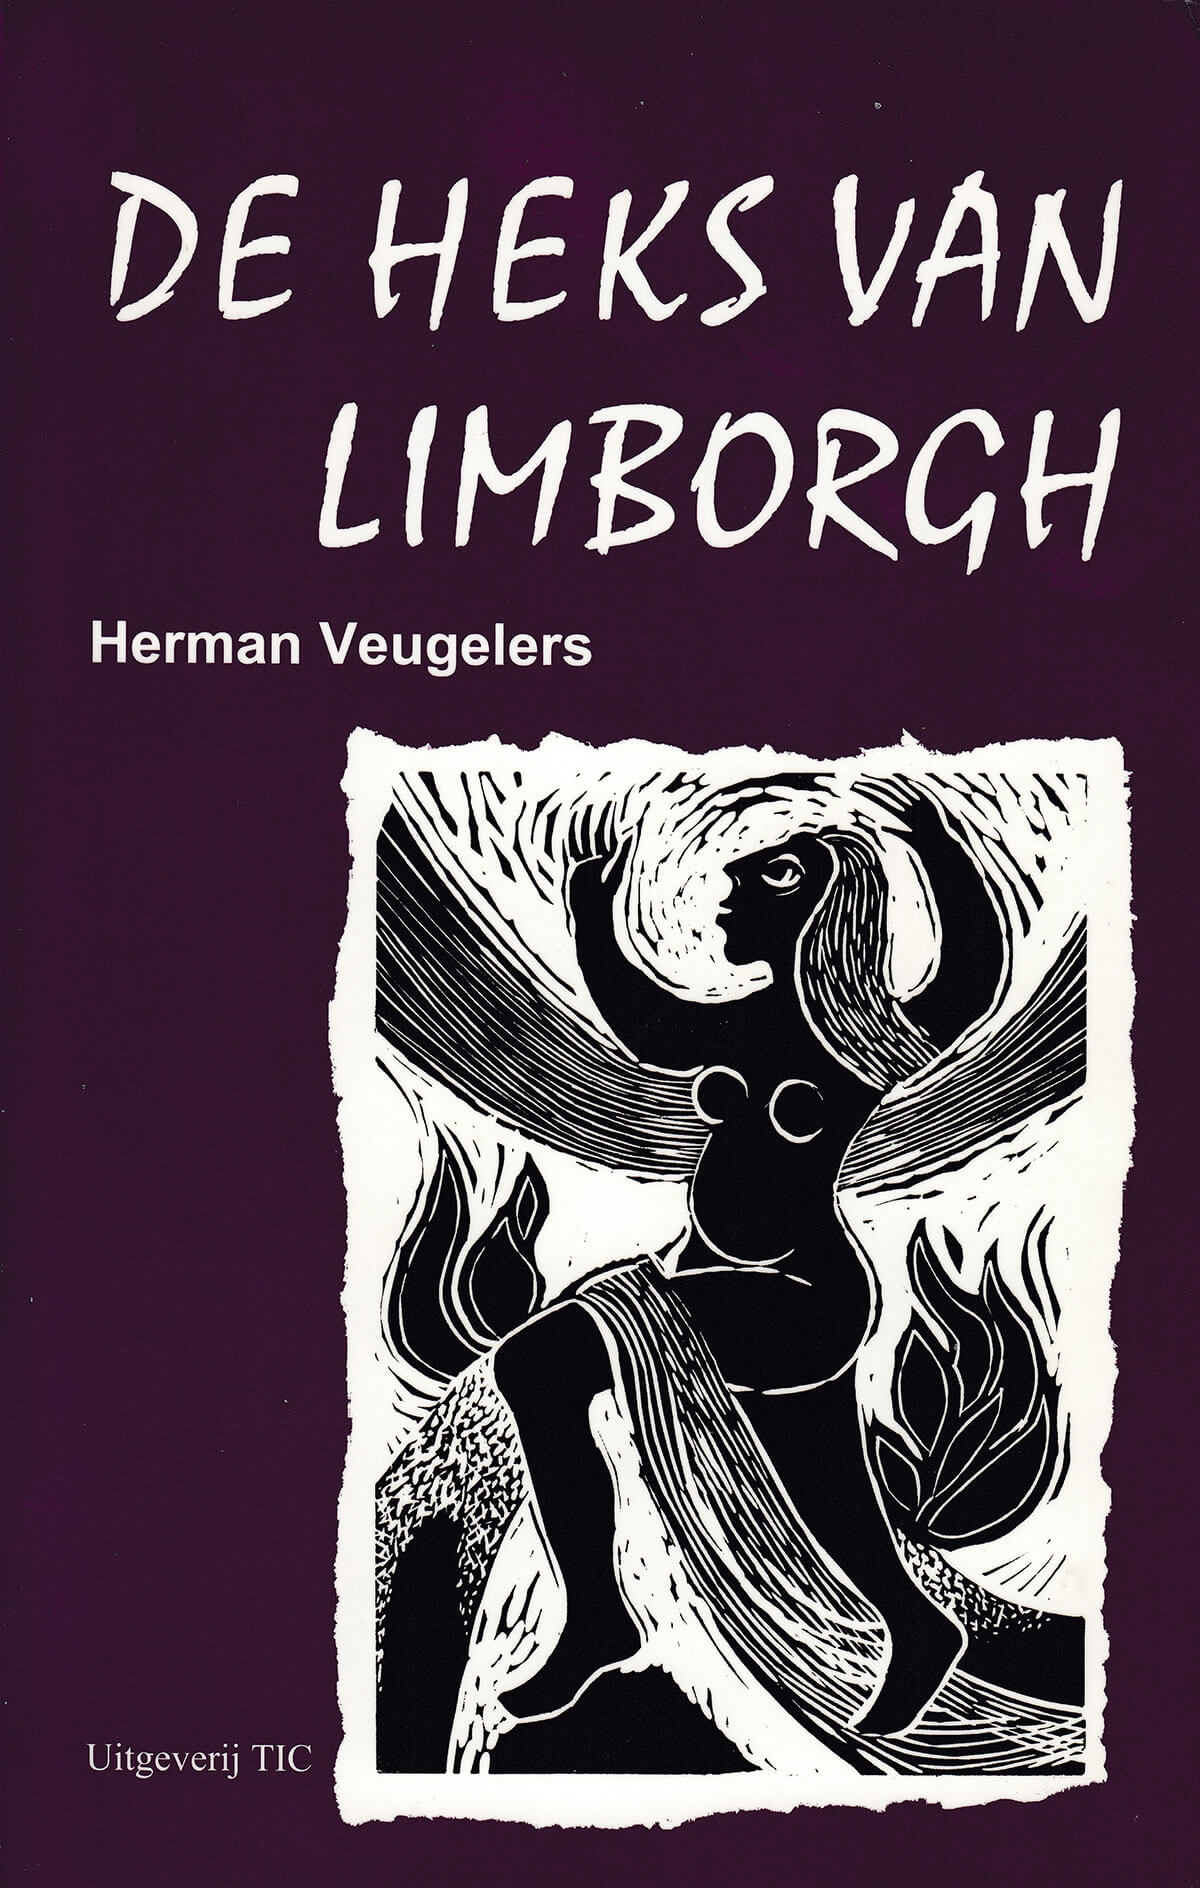 Herman Veugelers - De Heks van Limborgh